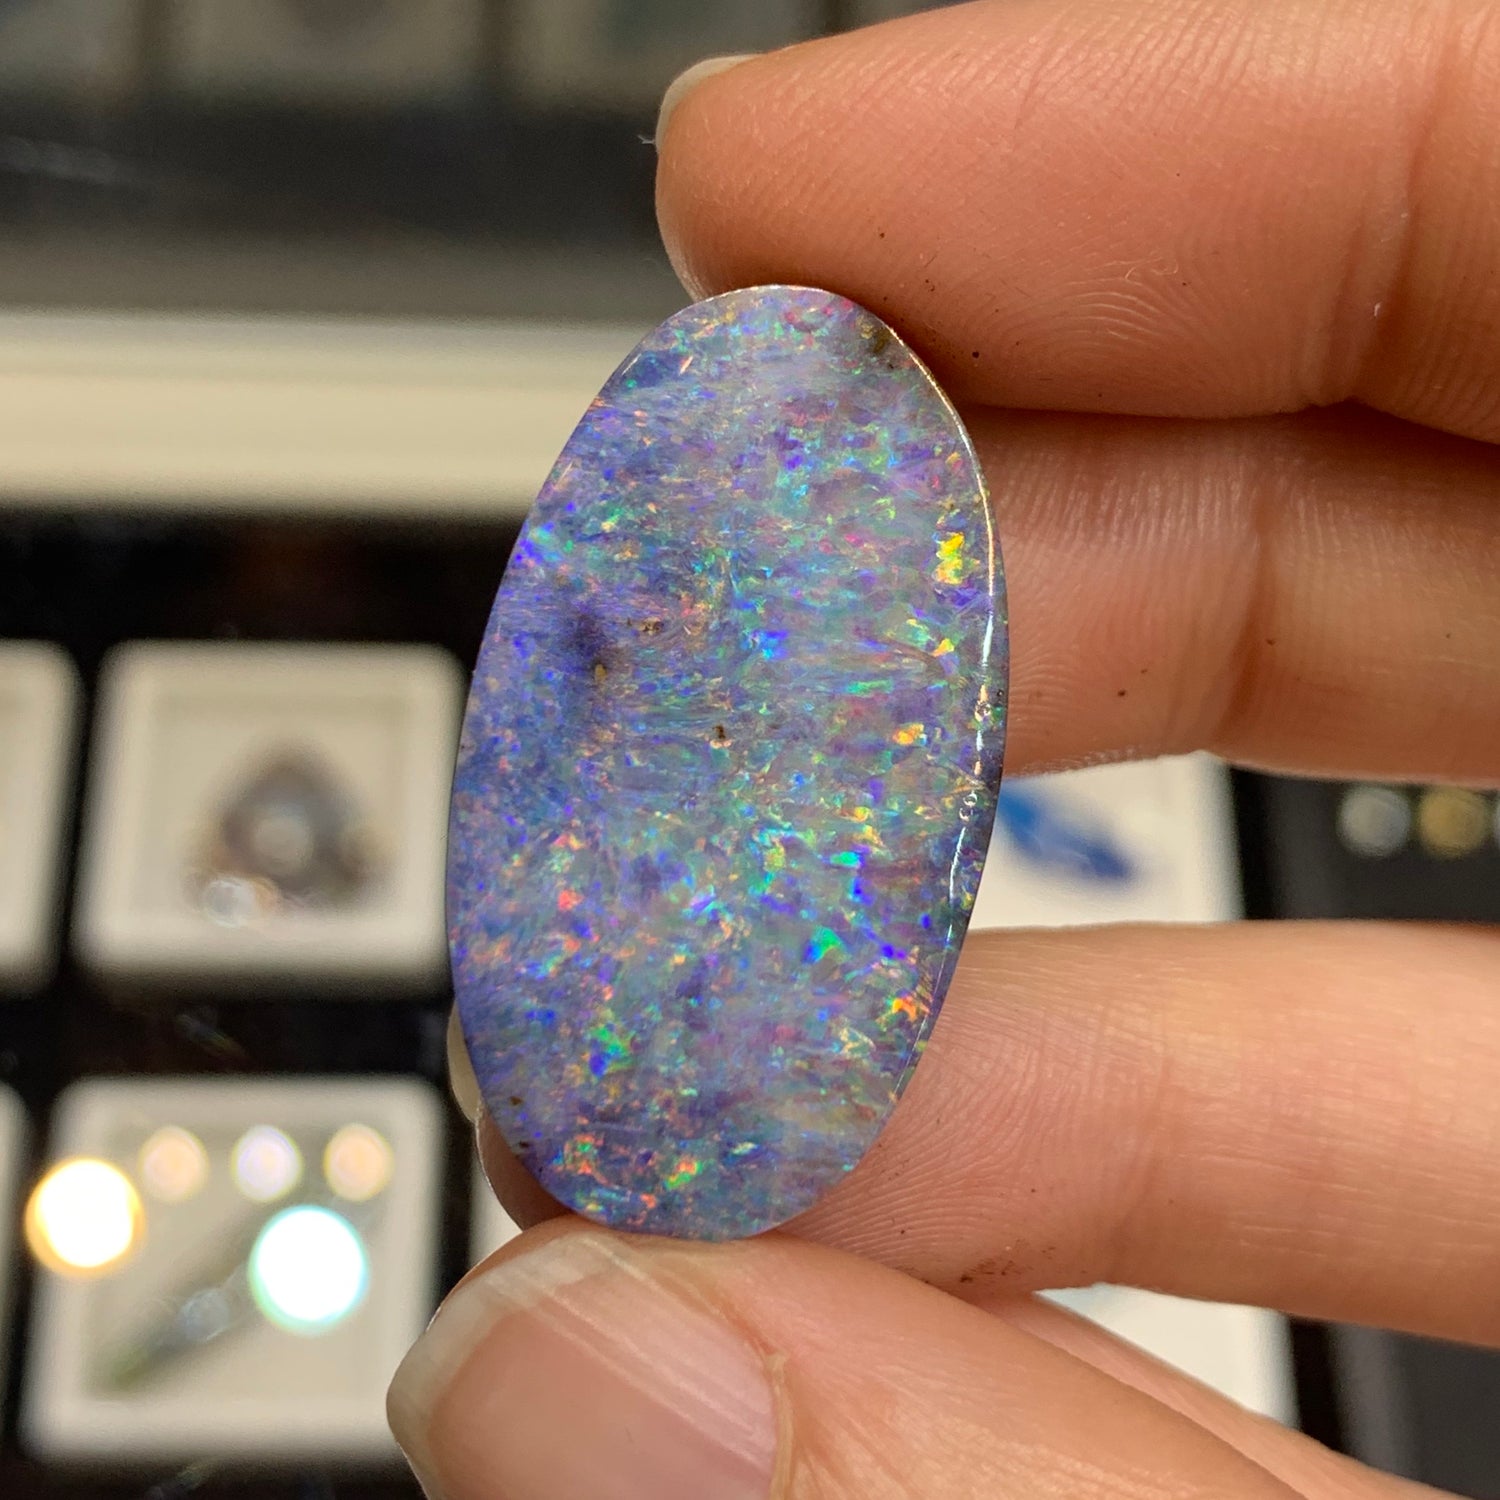 Lilac-hued opals